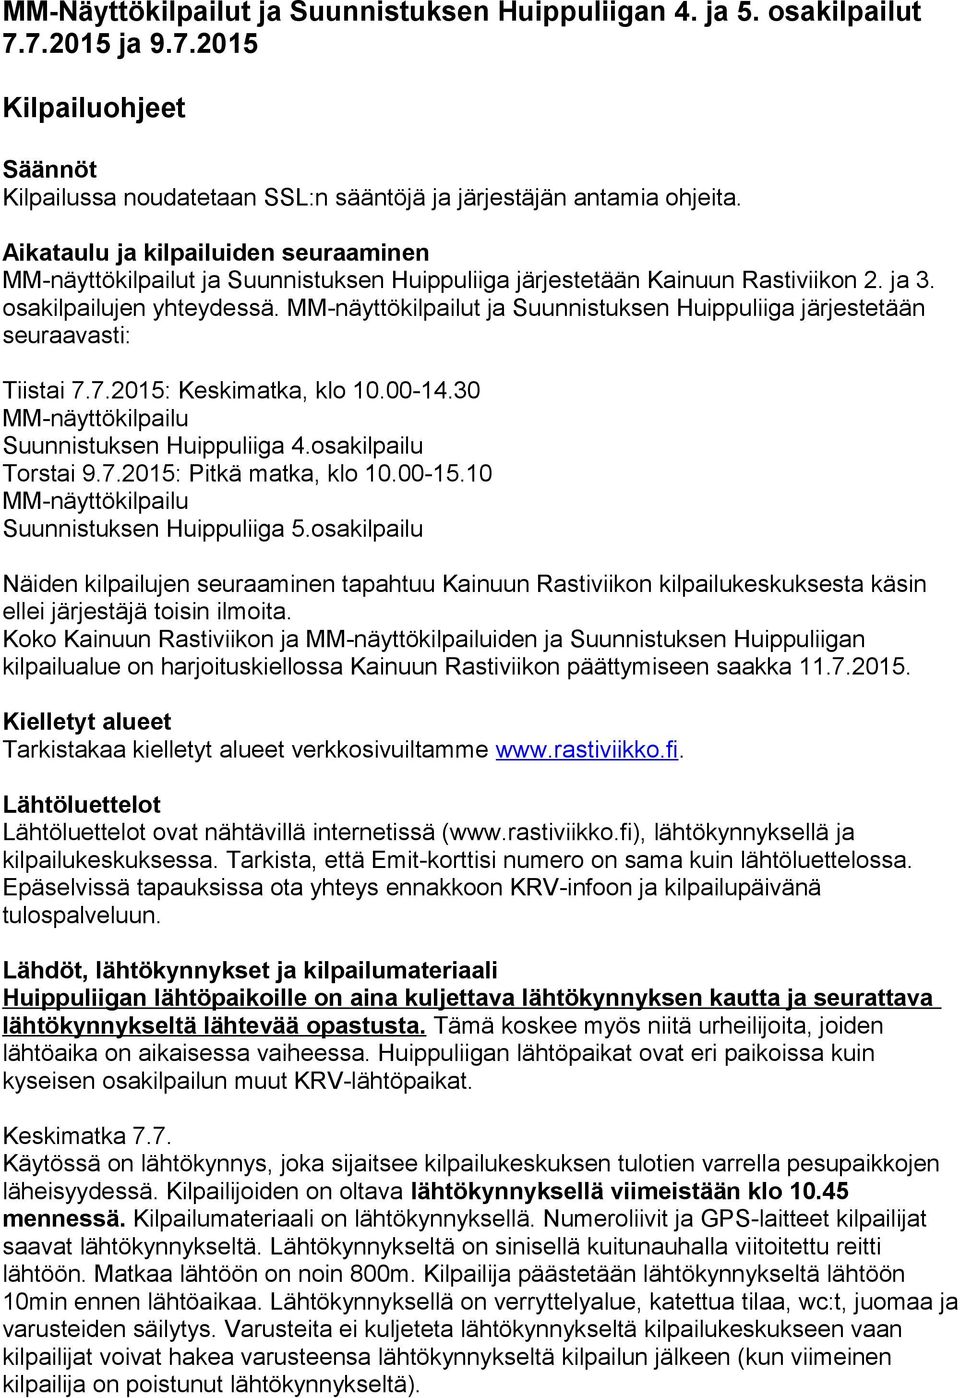 MM-näyttökilpailut ja Suunnistuksen Huippuliiga järjestetään seuraavasti: Tiistai 7.7.2015: Keskimatka, klo 10.00-14.30 MM-näyttökilpailu Suunnistuksen Huippuliiga 4.osakilpailu Torstai 9.7.2015: Pitkä matka, klo 10.